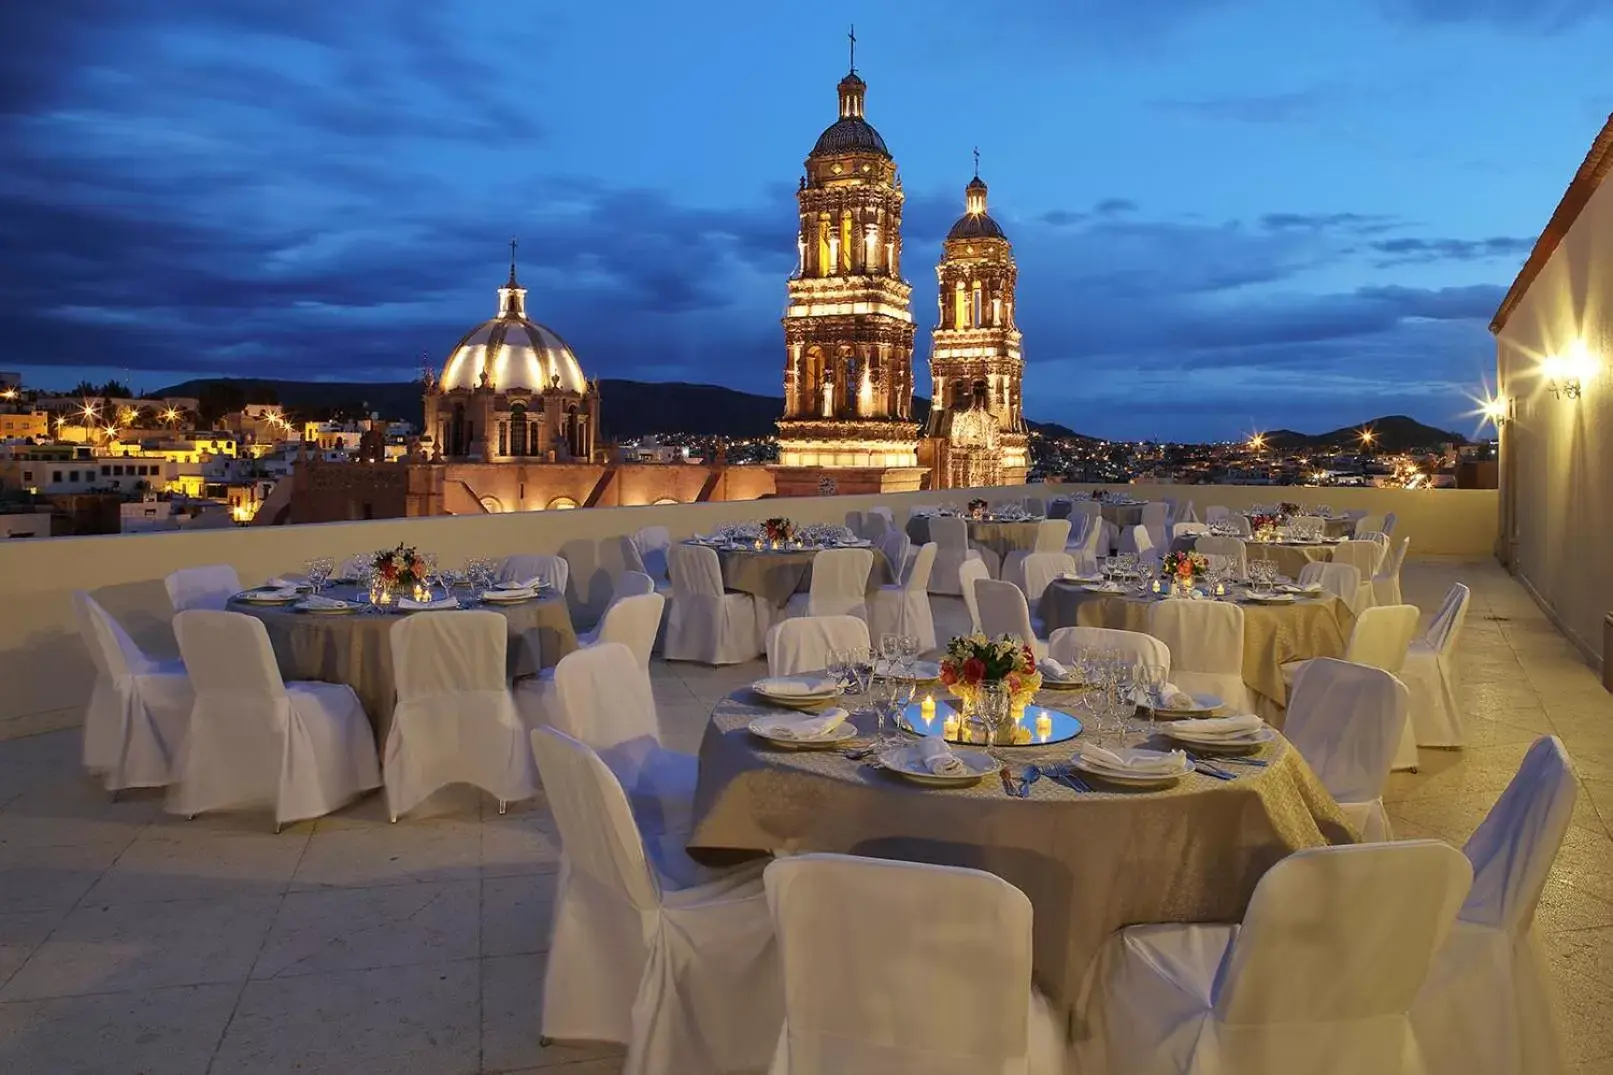 Banquet/Function facilities, Banquet Facilities in Emporio Zacatecas